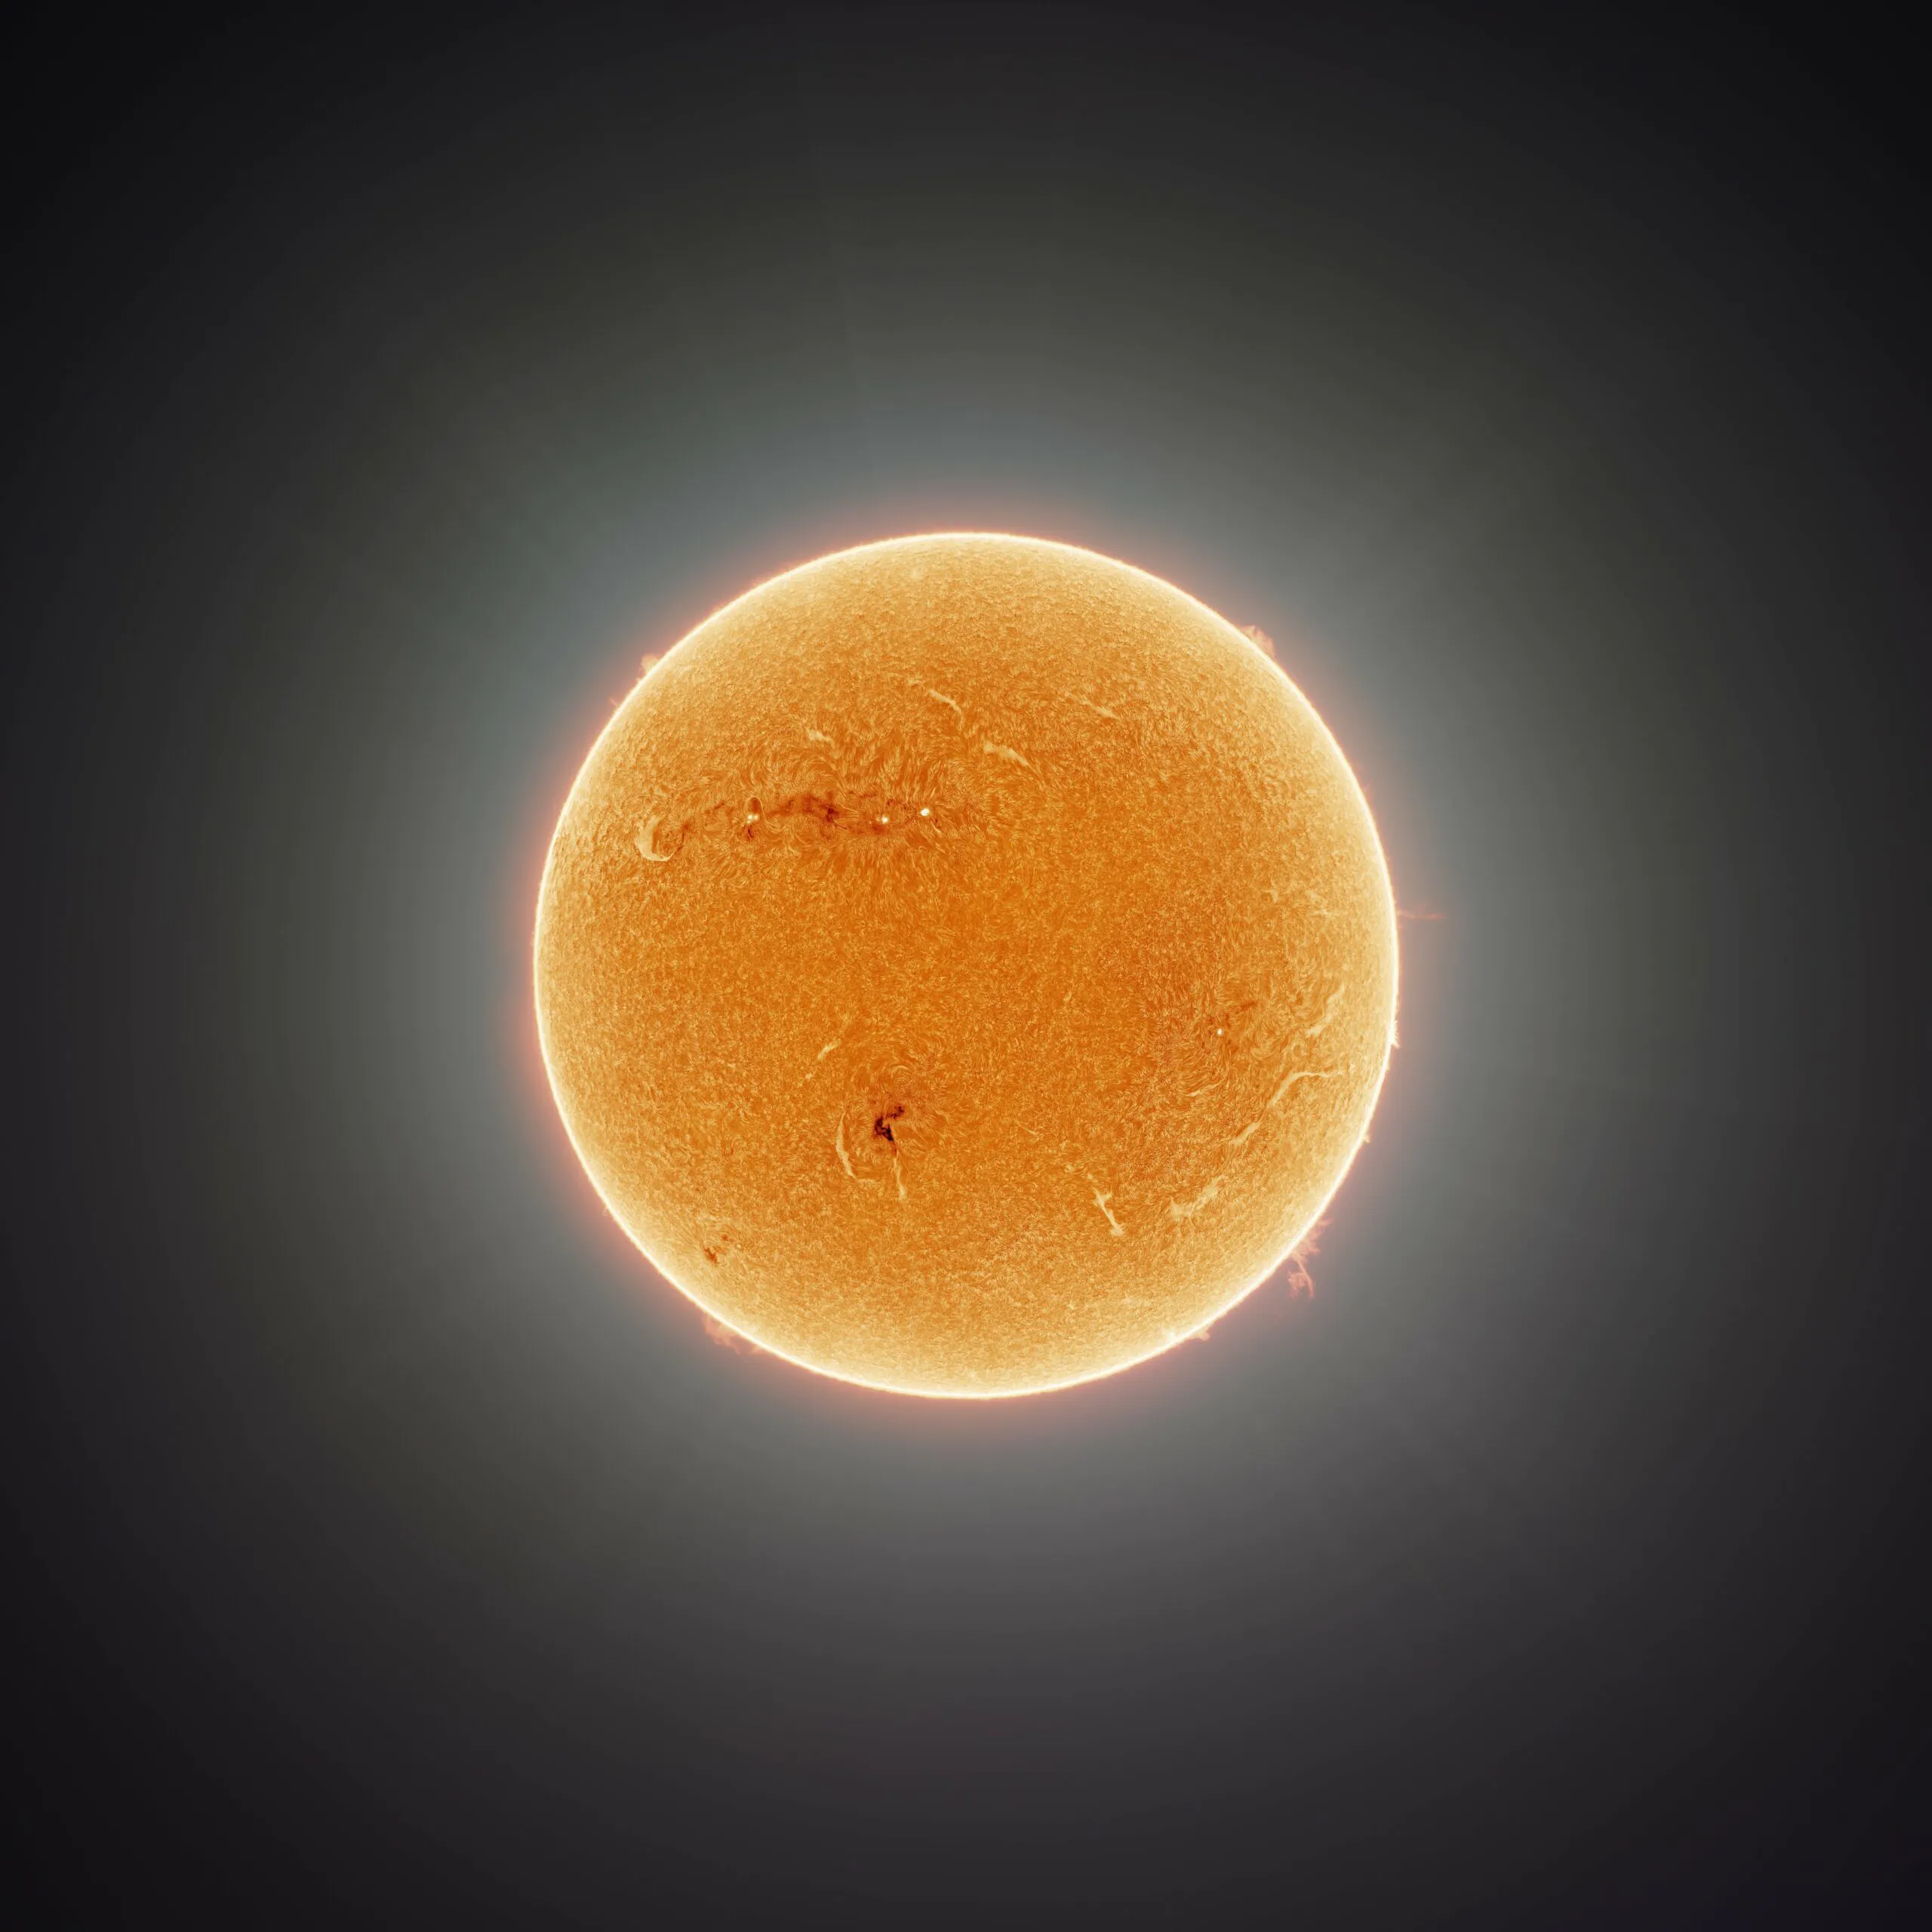 164억 XNUMX만 픽셀의 가장 상세한 태양 사진이 공개되었습니다.